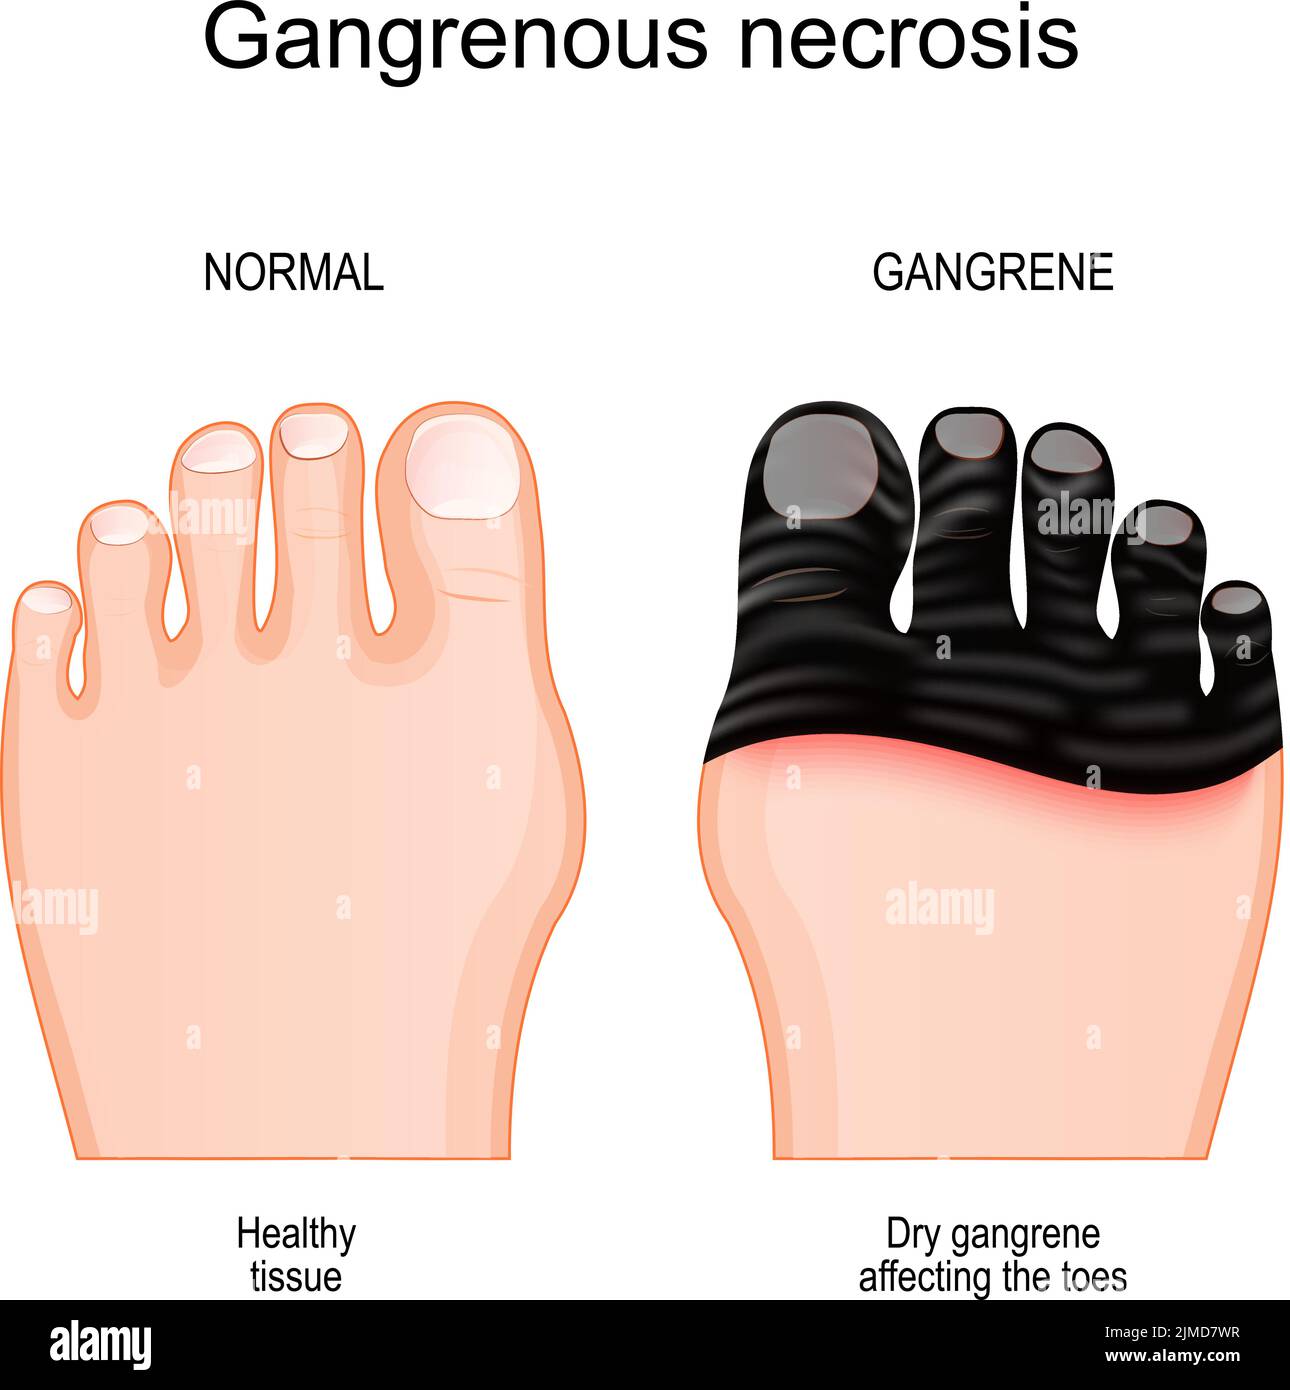 Gangrän. Vergleich und Unterschied zwischen gesundem Fuß und Bein mit Gewebetod durch gangrenöse Nekrose. Trockener Gangrän, der die Zehen beeinflusst. Vektor Stock Vektor